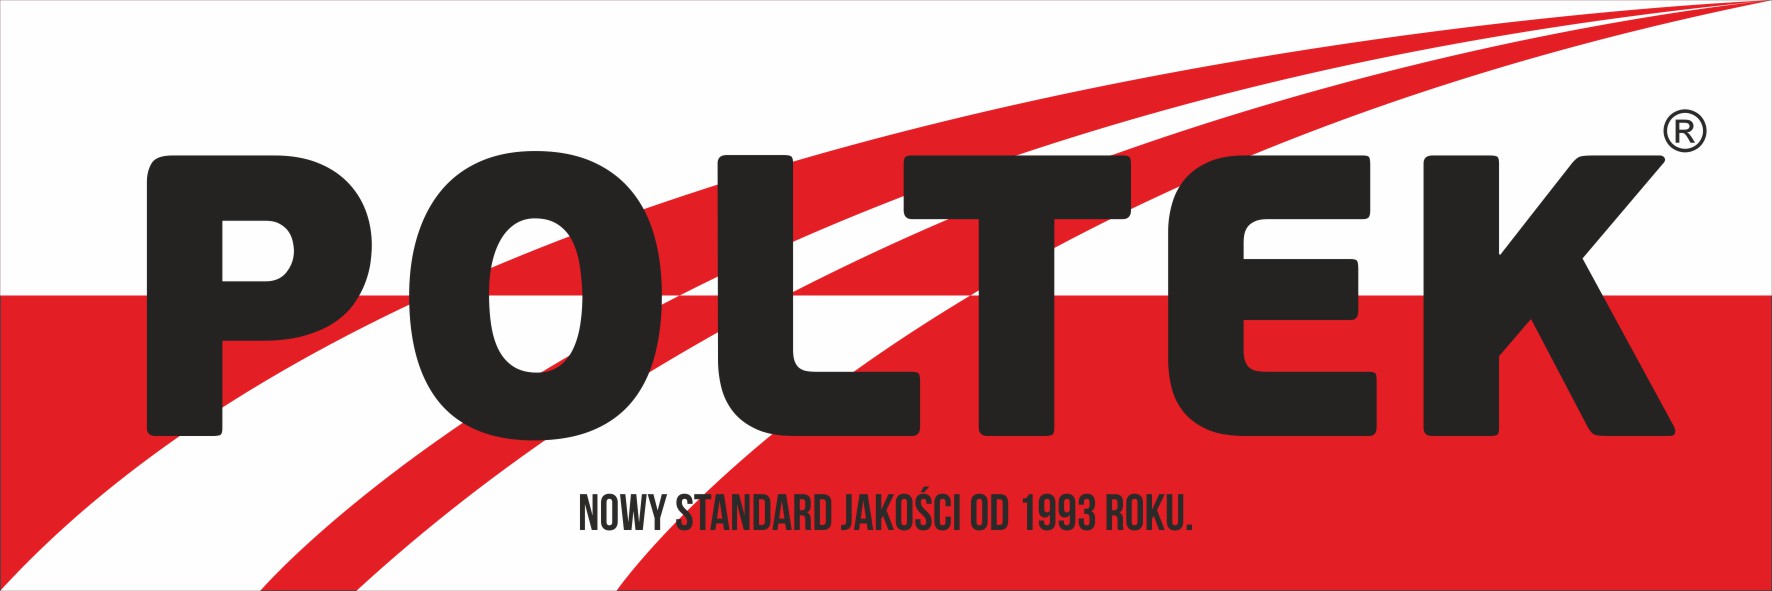 Logo Poltek